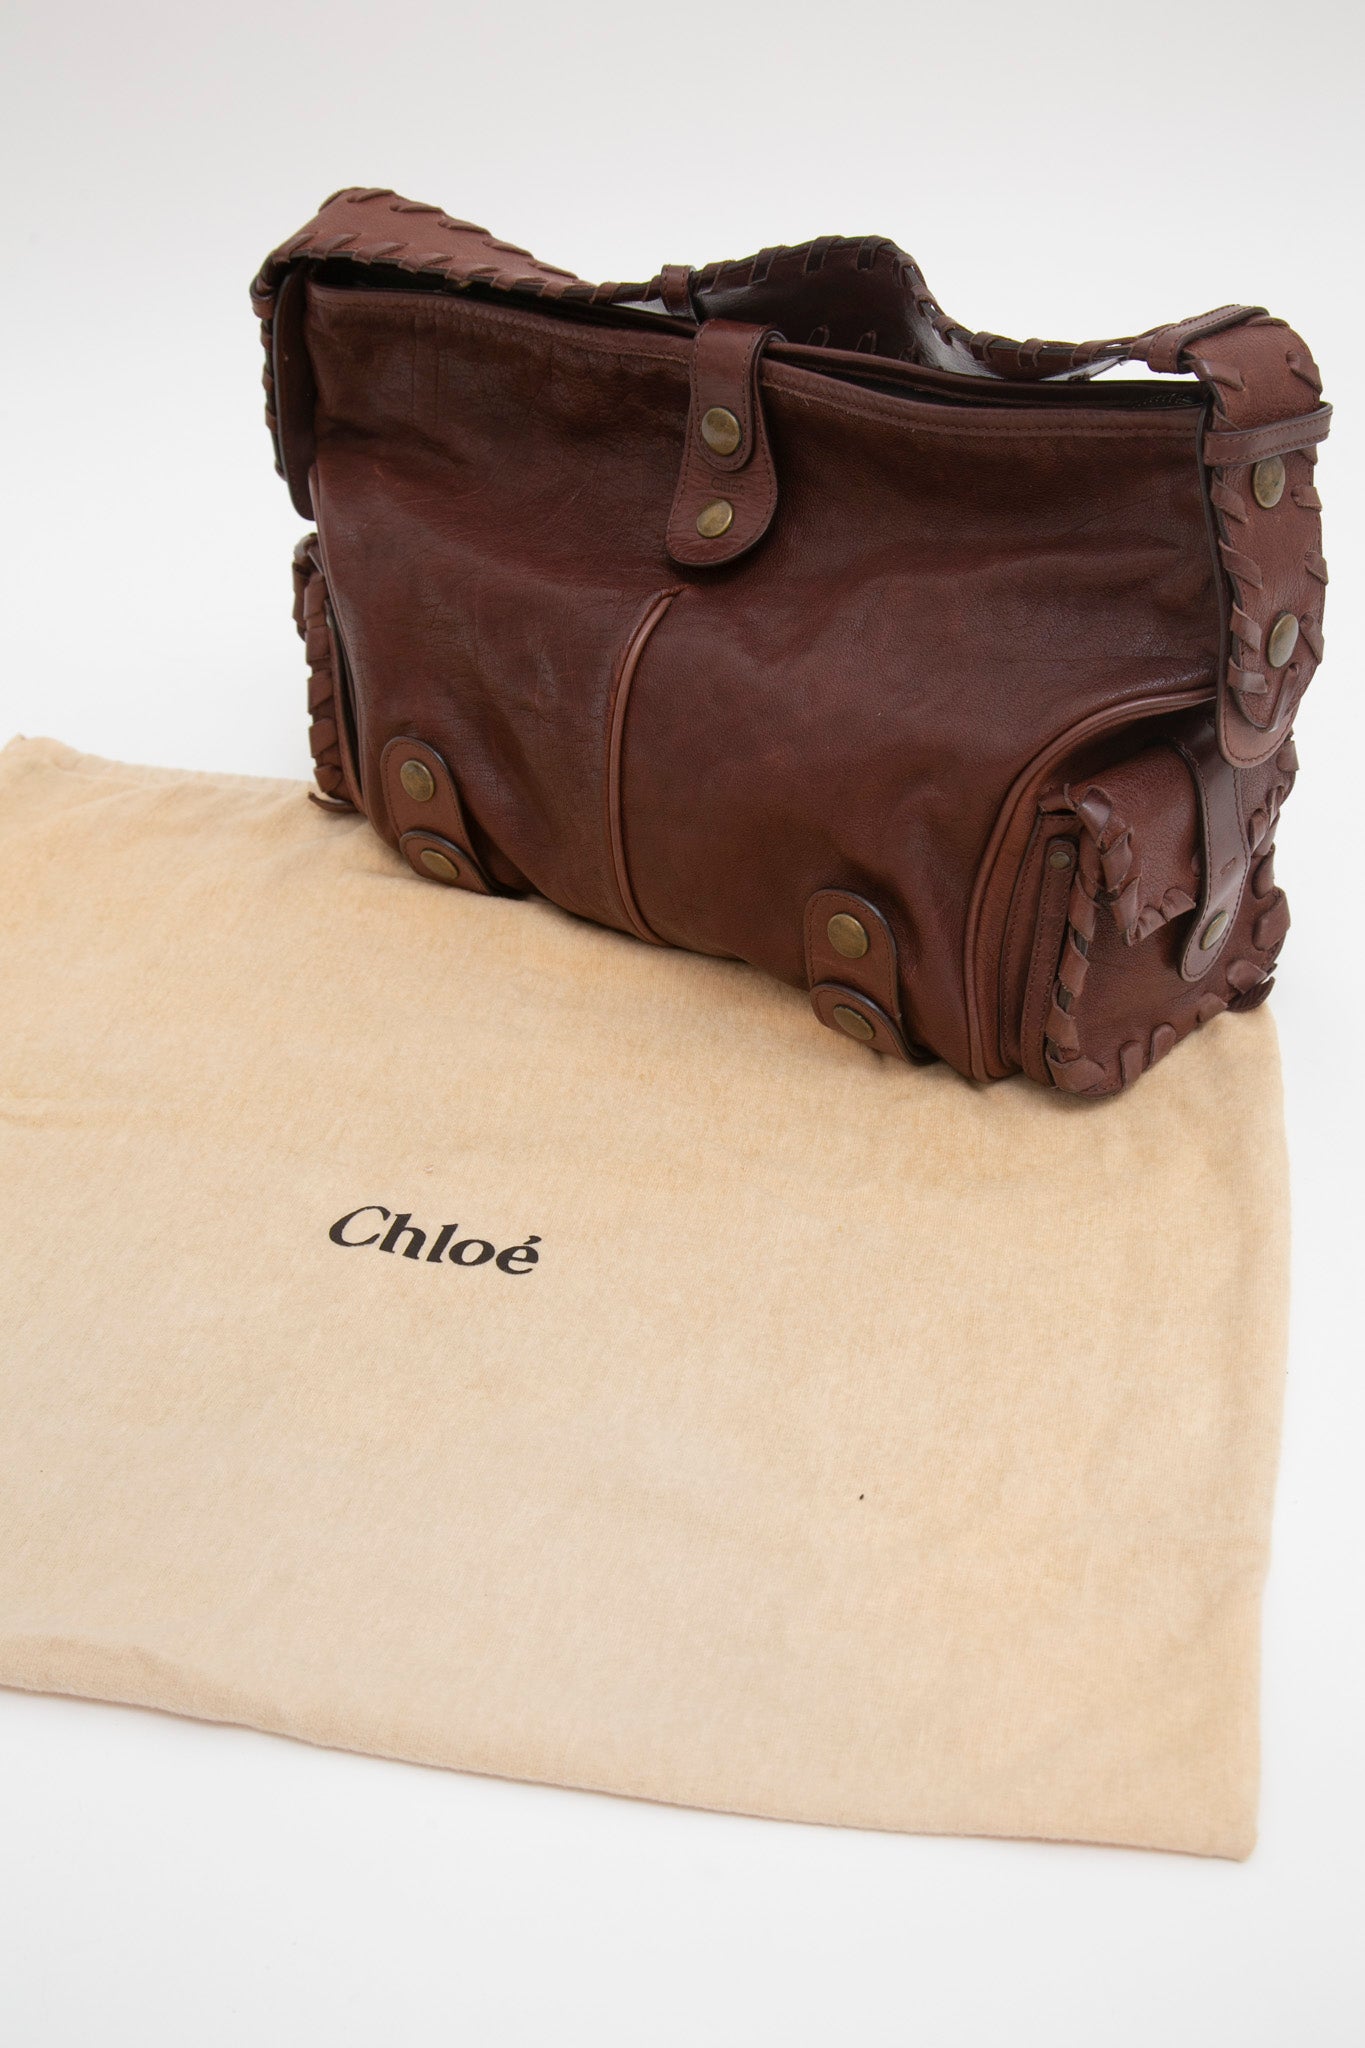 Chloé Silverado Leather Bag